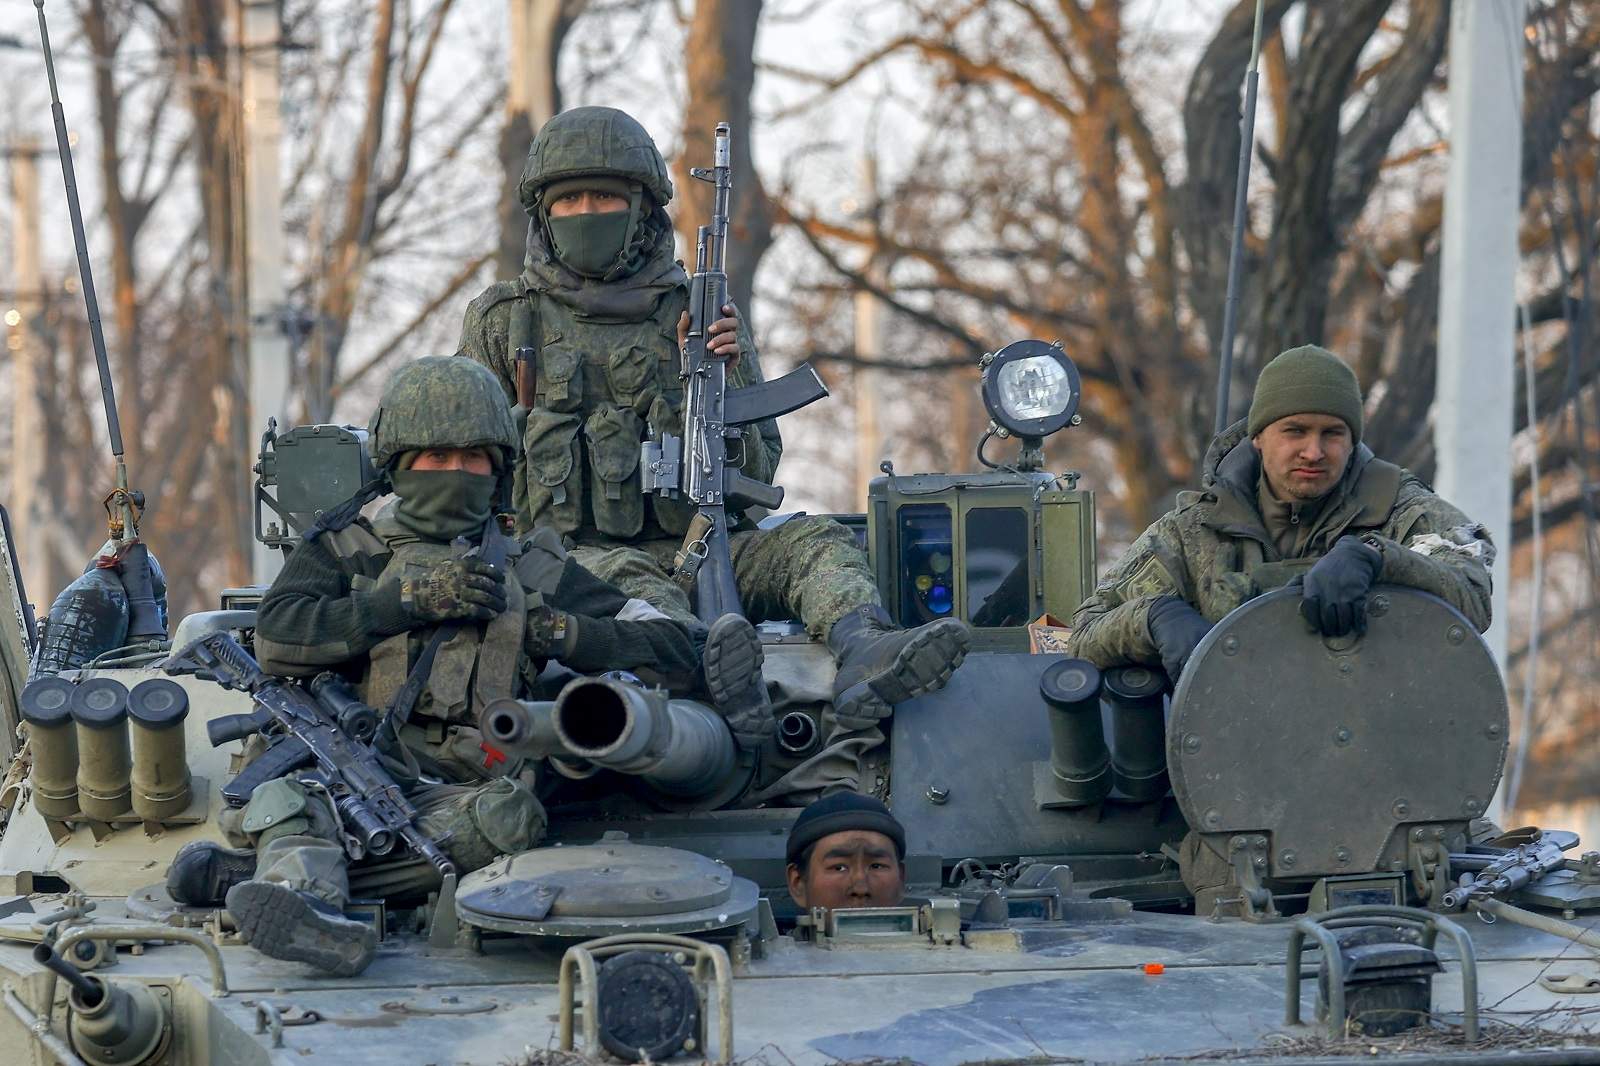 Αμερικανός στρατηγός Σ.Ρίτερ: «Η μάχη για την Ουκρανία έχει χαθεί – Η Ρωσία κέρδισε» (βίντεο)